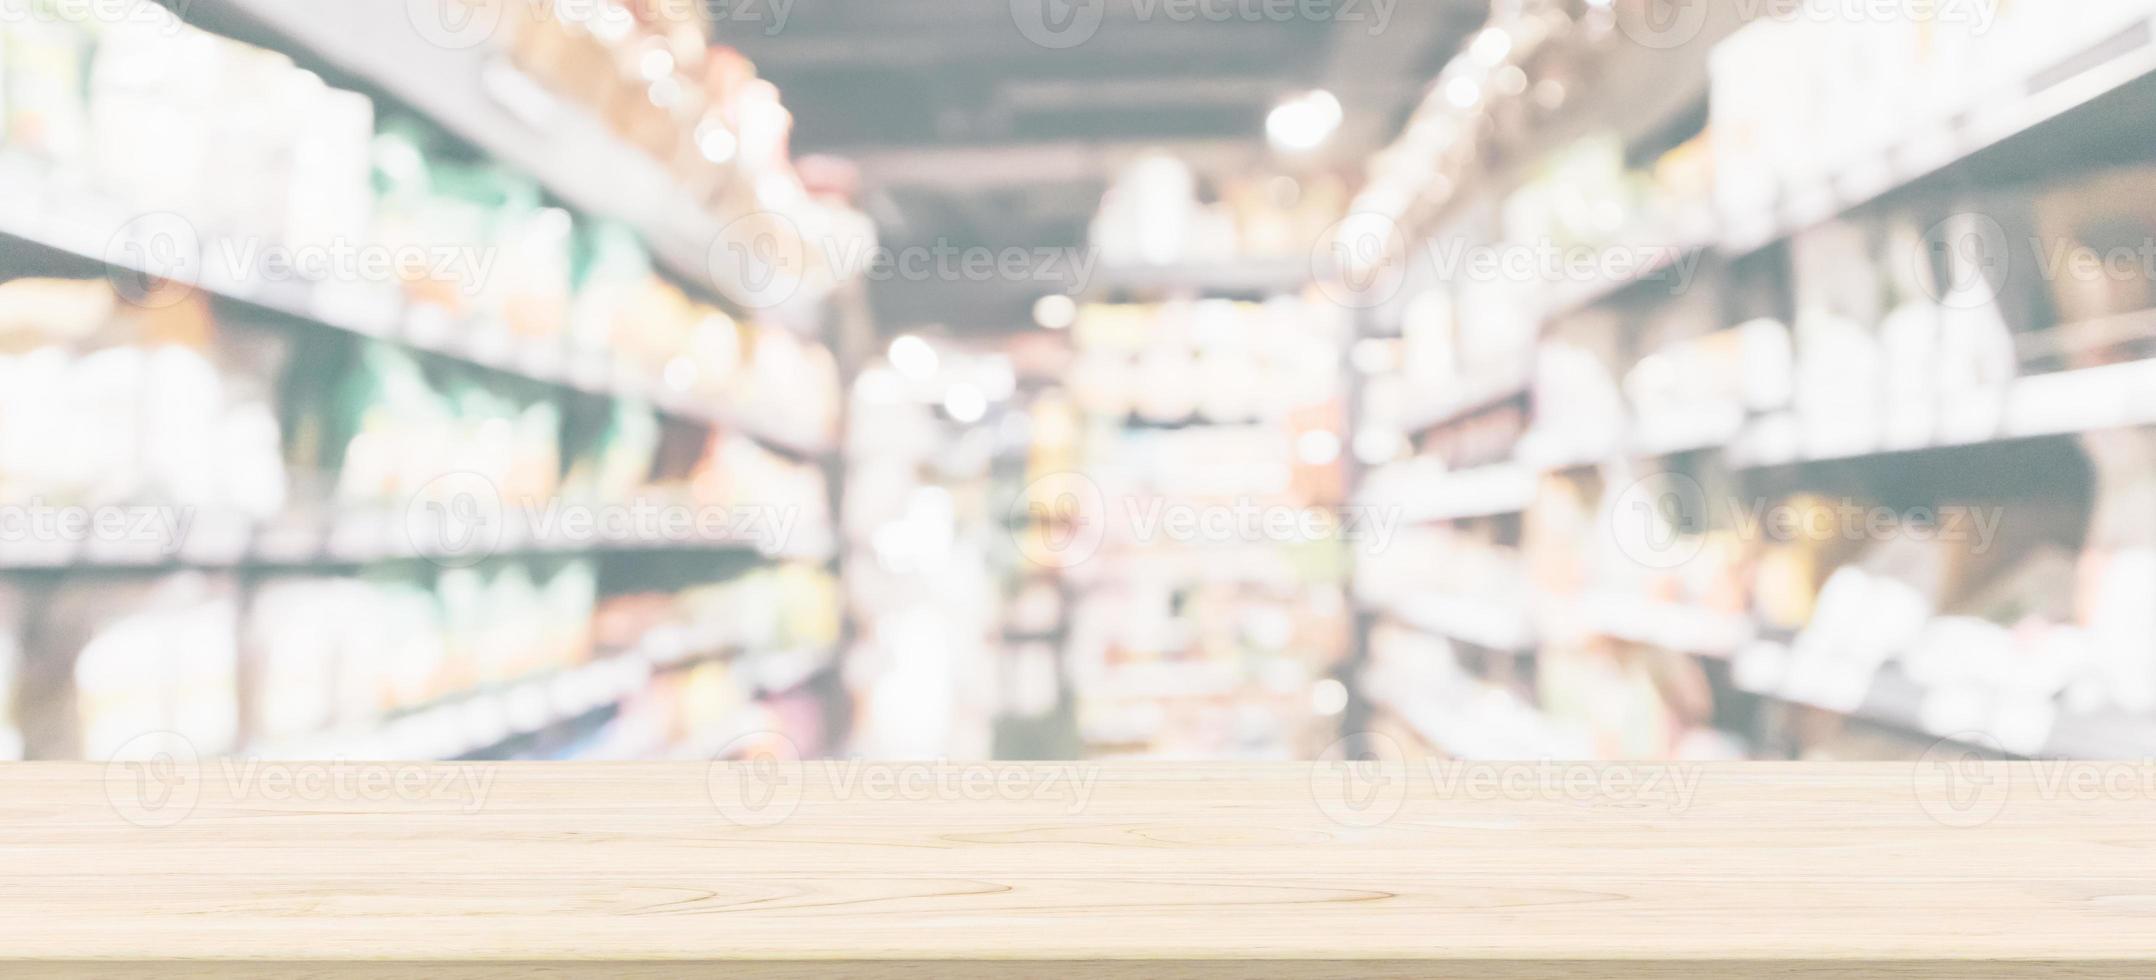 hout tafel top met abstract supermarkt kruidenier op te slaan koelkast wazig onscherp achtergrond met bokeh licht foto